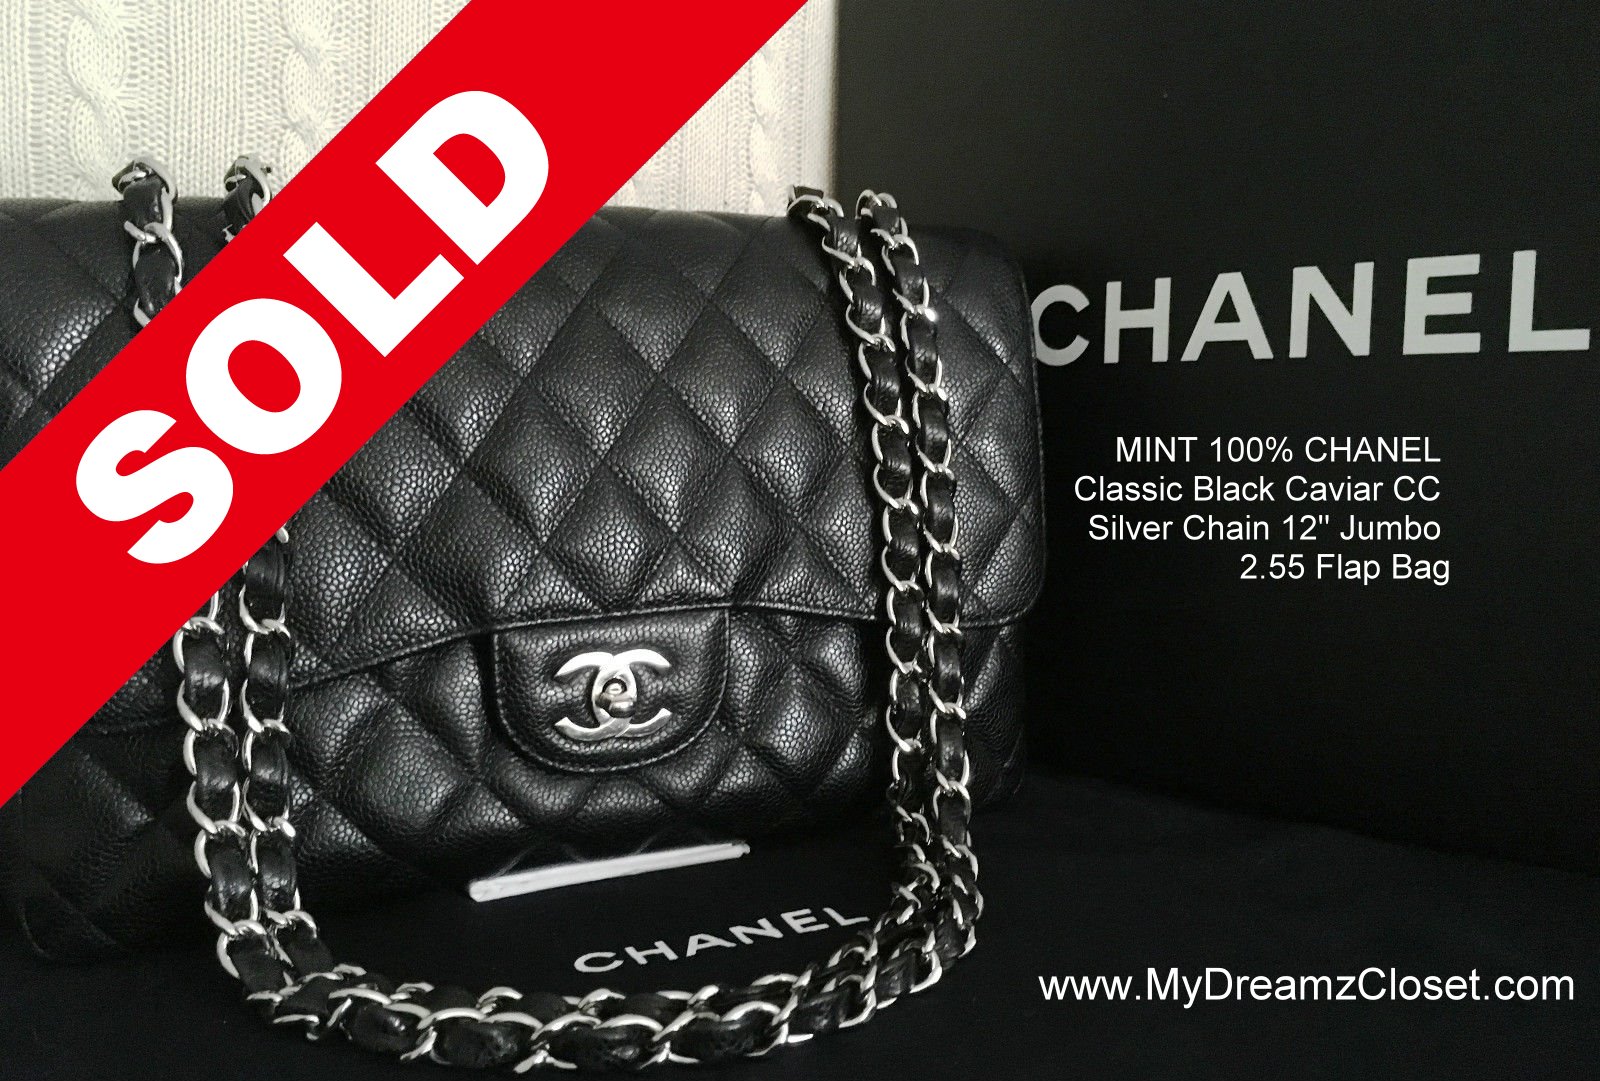 SOLD - MINT 100% CHANEL Classic Black Caviar CC Silver Chain 12